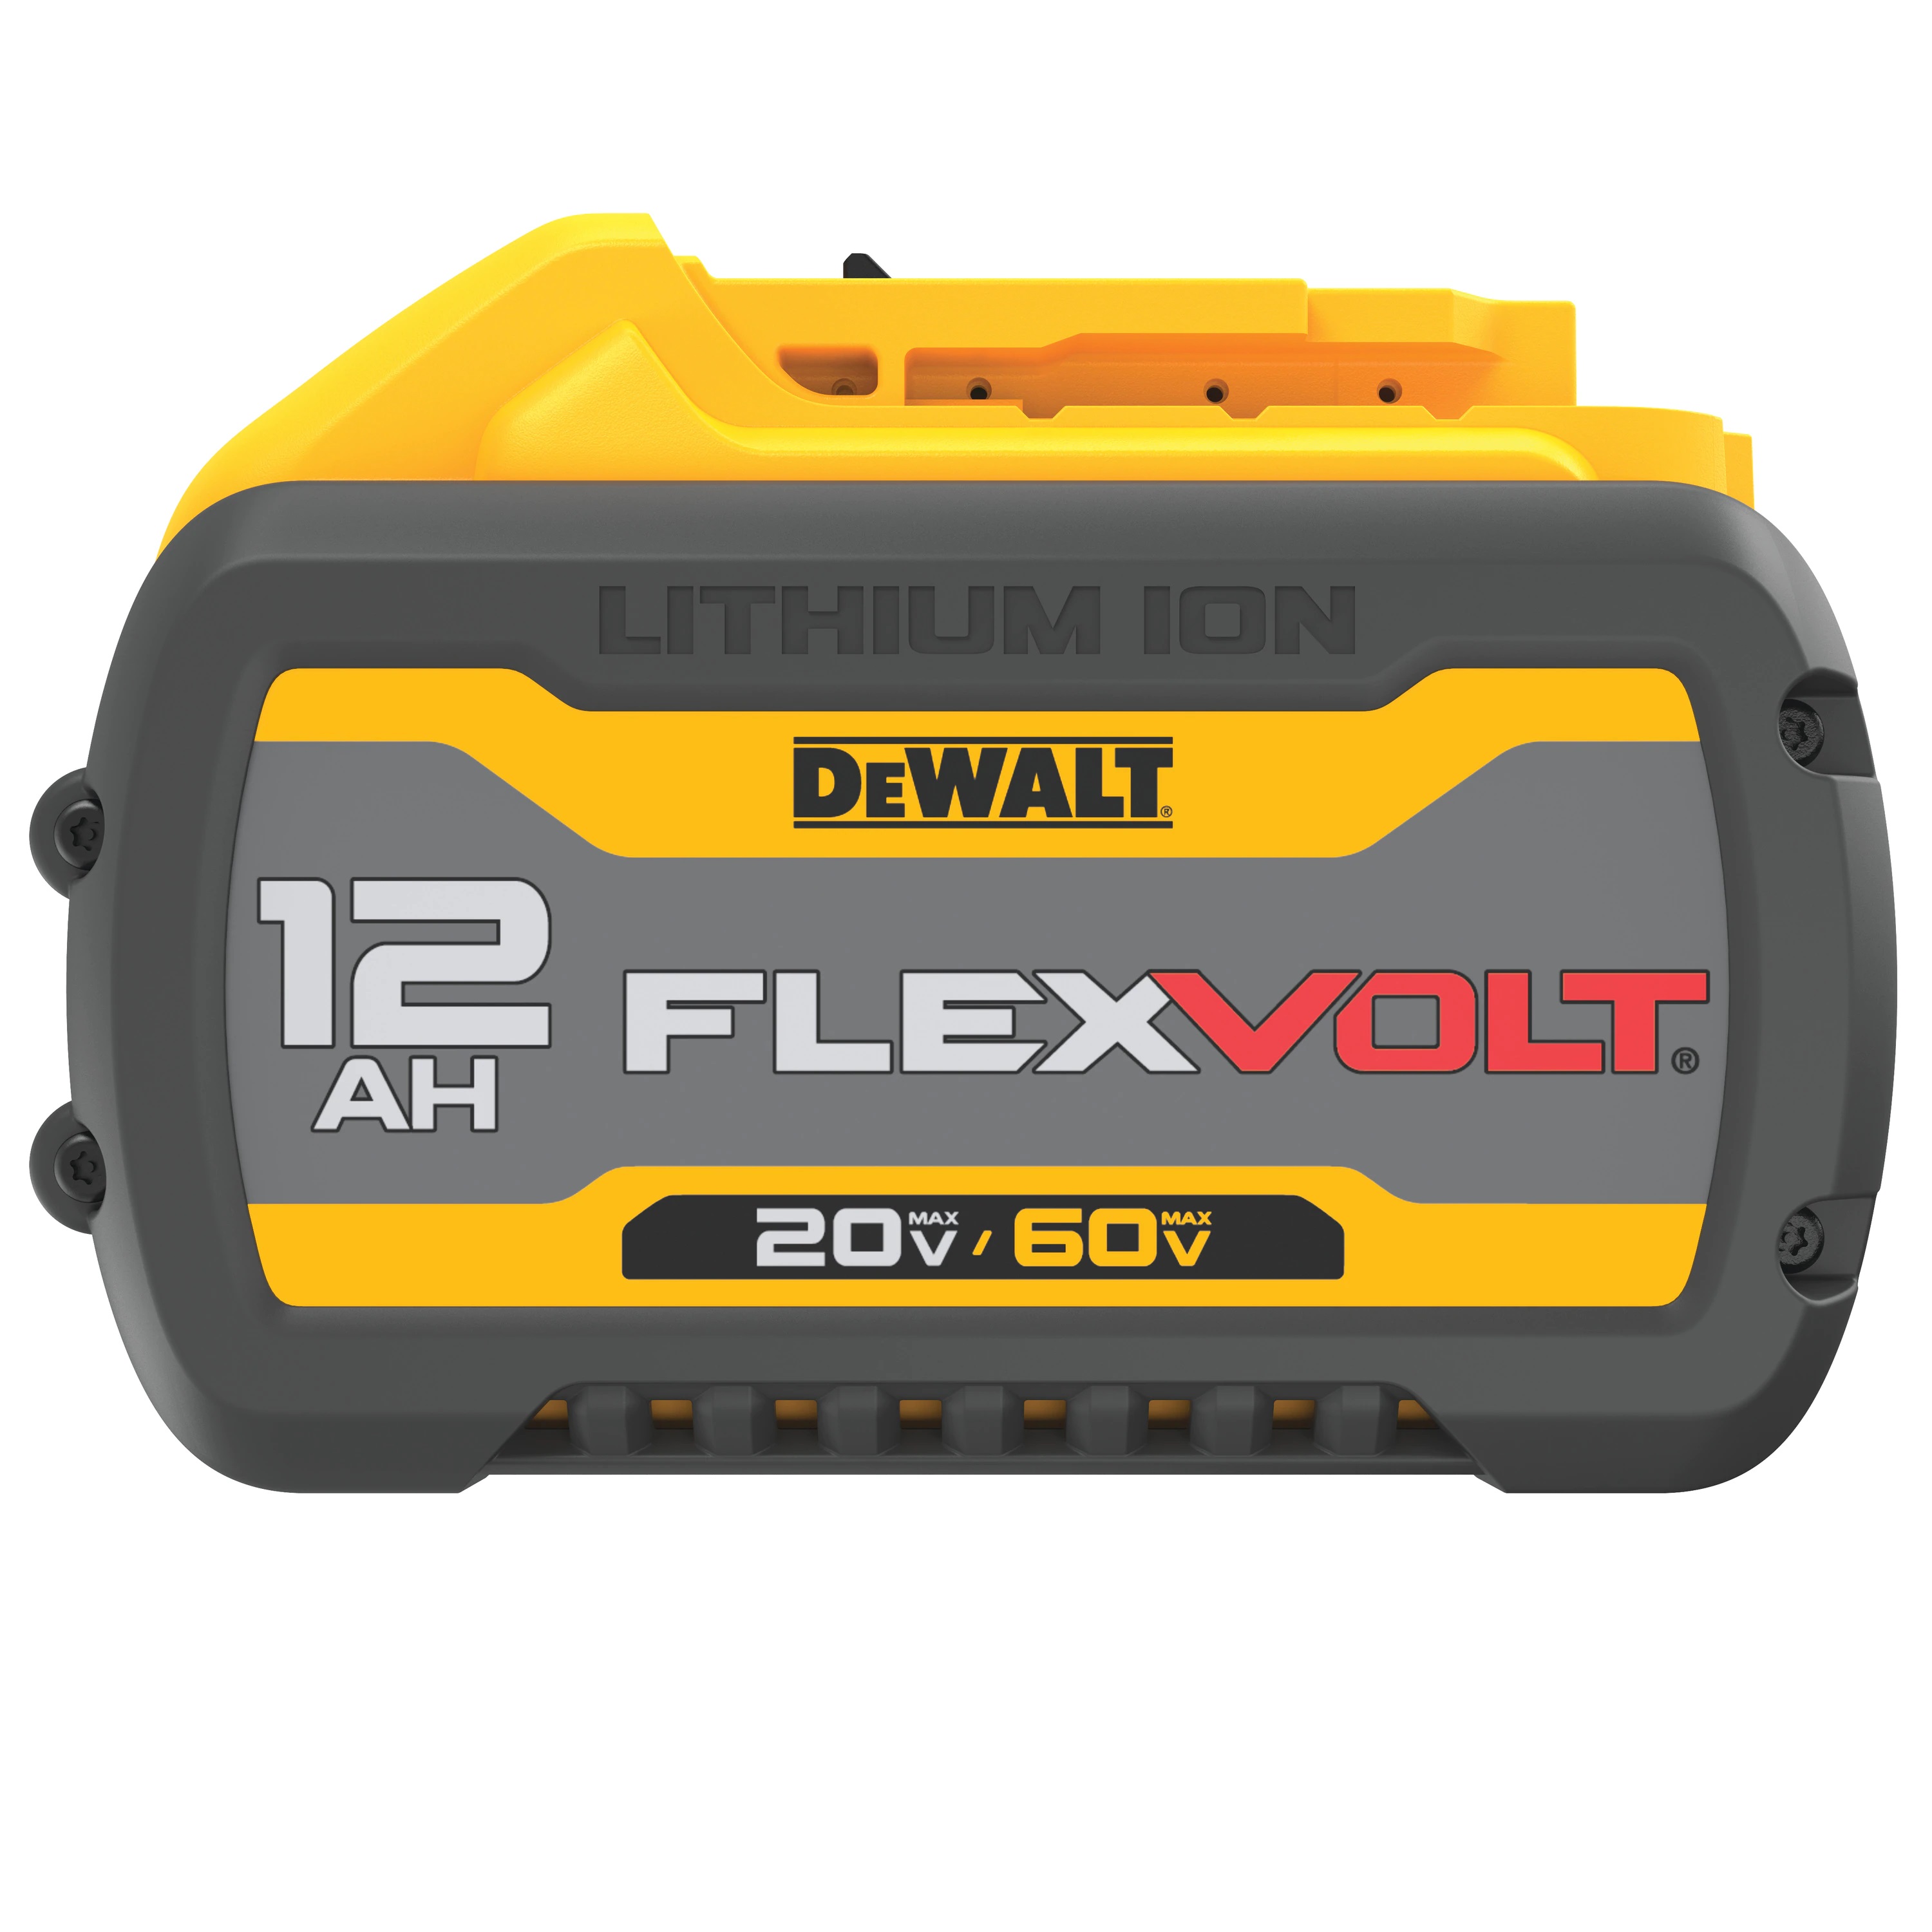 Battery - FLEXVOLT® 20V/60V MAX* 12.0 AH** - Power Tool Accessories